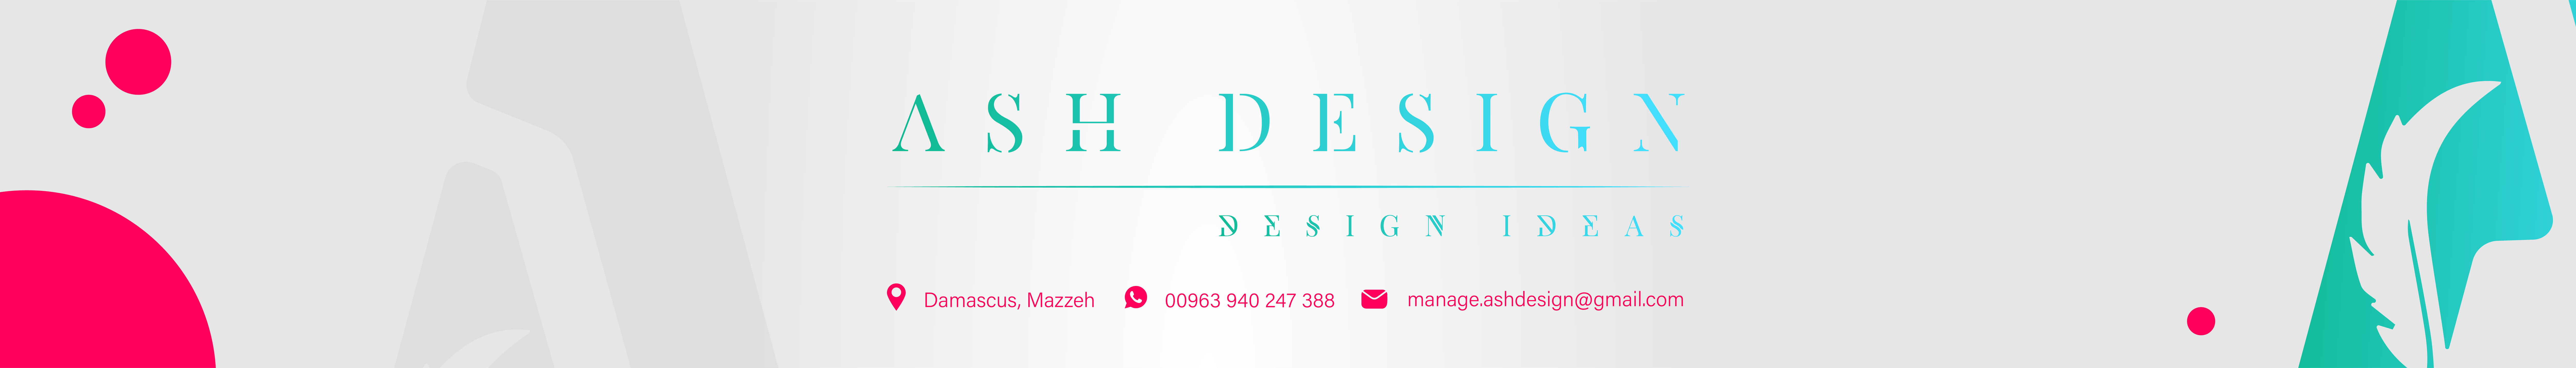 ASH Design's profile banner